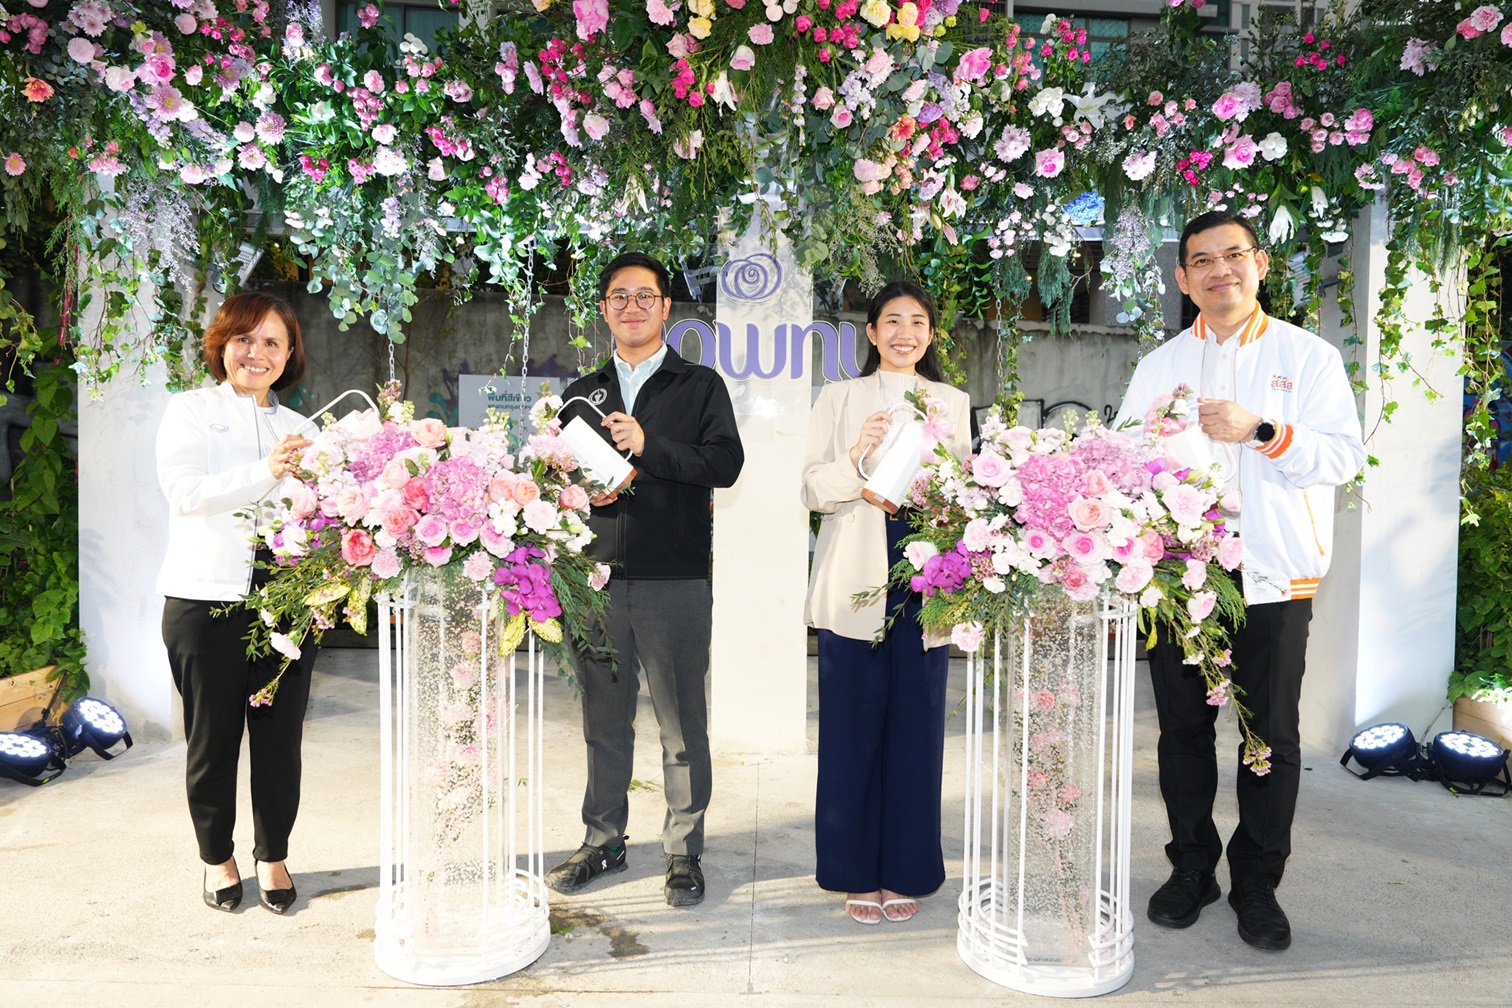 ยืนหยัดเพื่อความเบ่งบานอย่างยั่งยืน ดาวน์นี่ จับมือกรุงเทพมหานครฯ และภาคี เปิดตัวพ็อคเก็ต พาร์ค ปิดท้ายแคมเปญ Blooming Bangkok